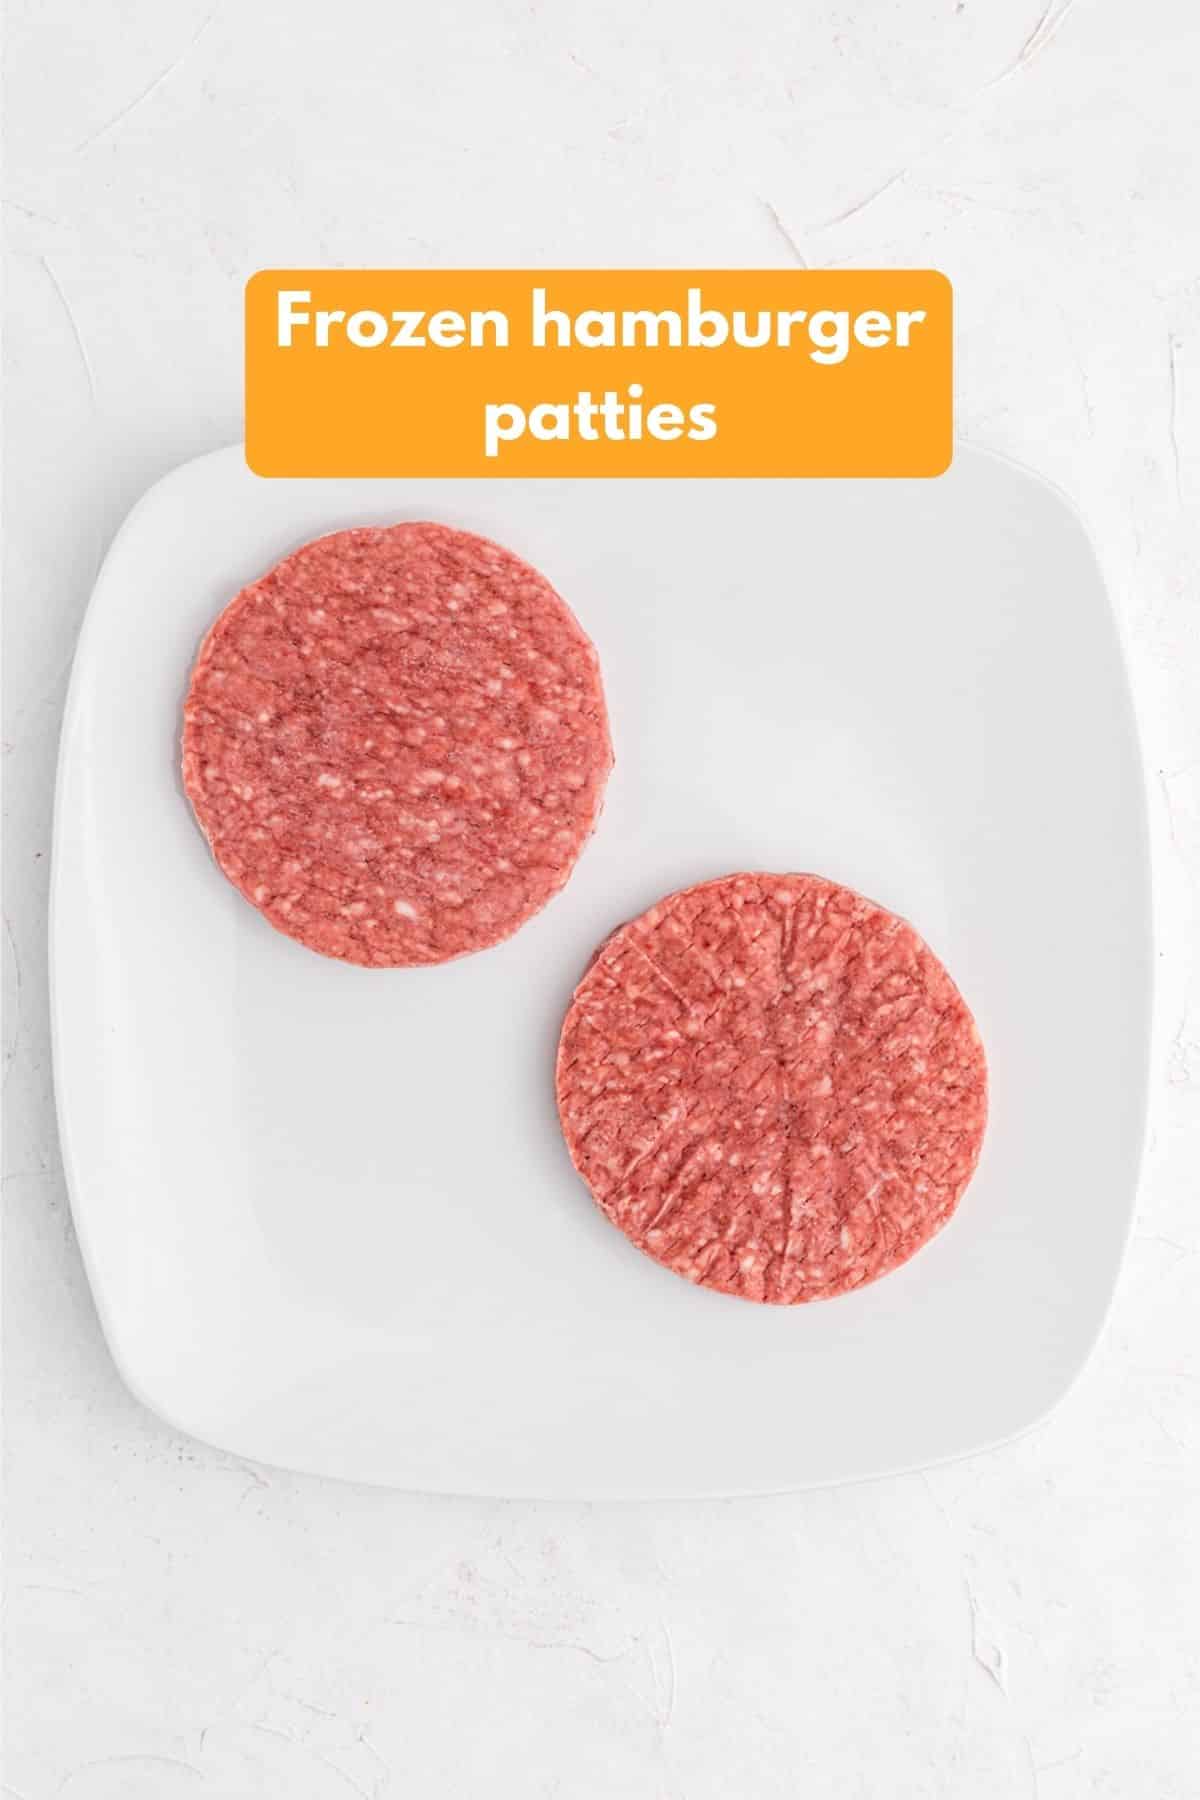 frozen hamburger patties on a platter ready for air fryer.